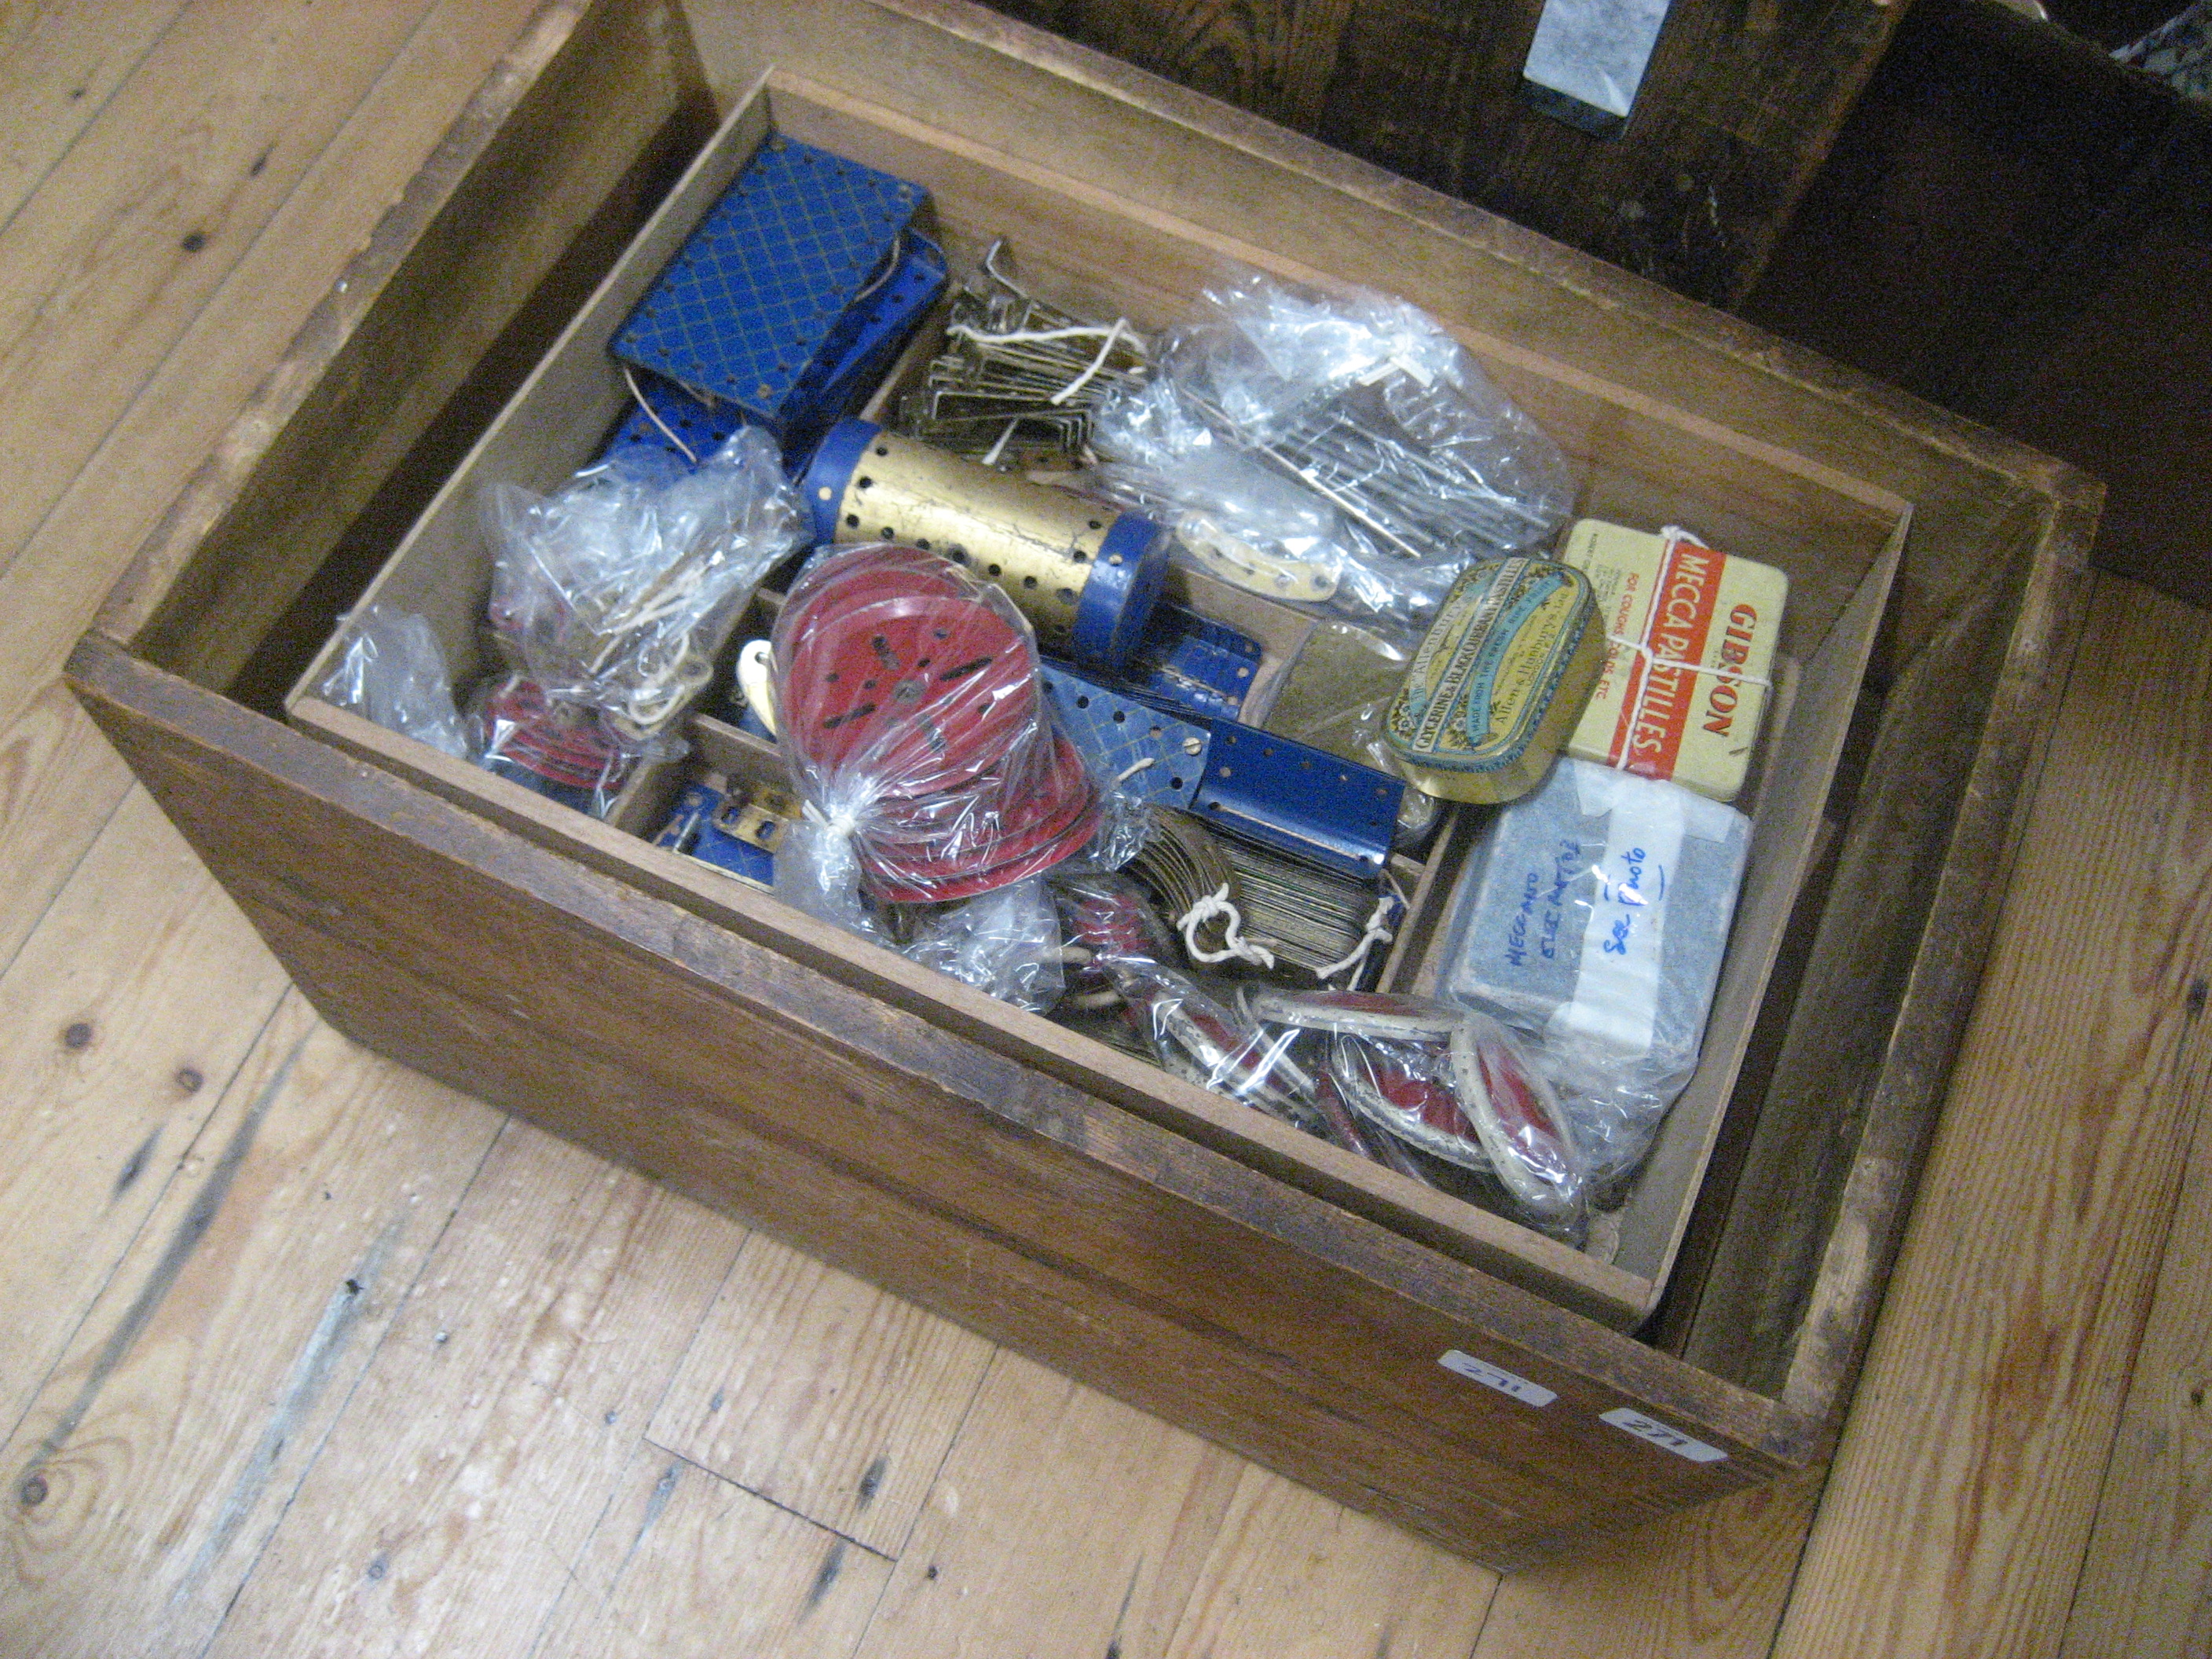 Wooden box of Meccano